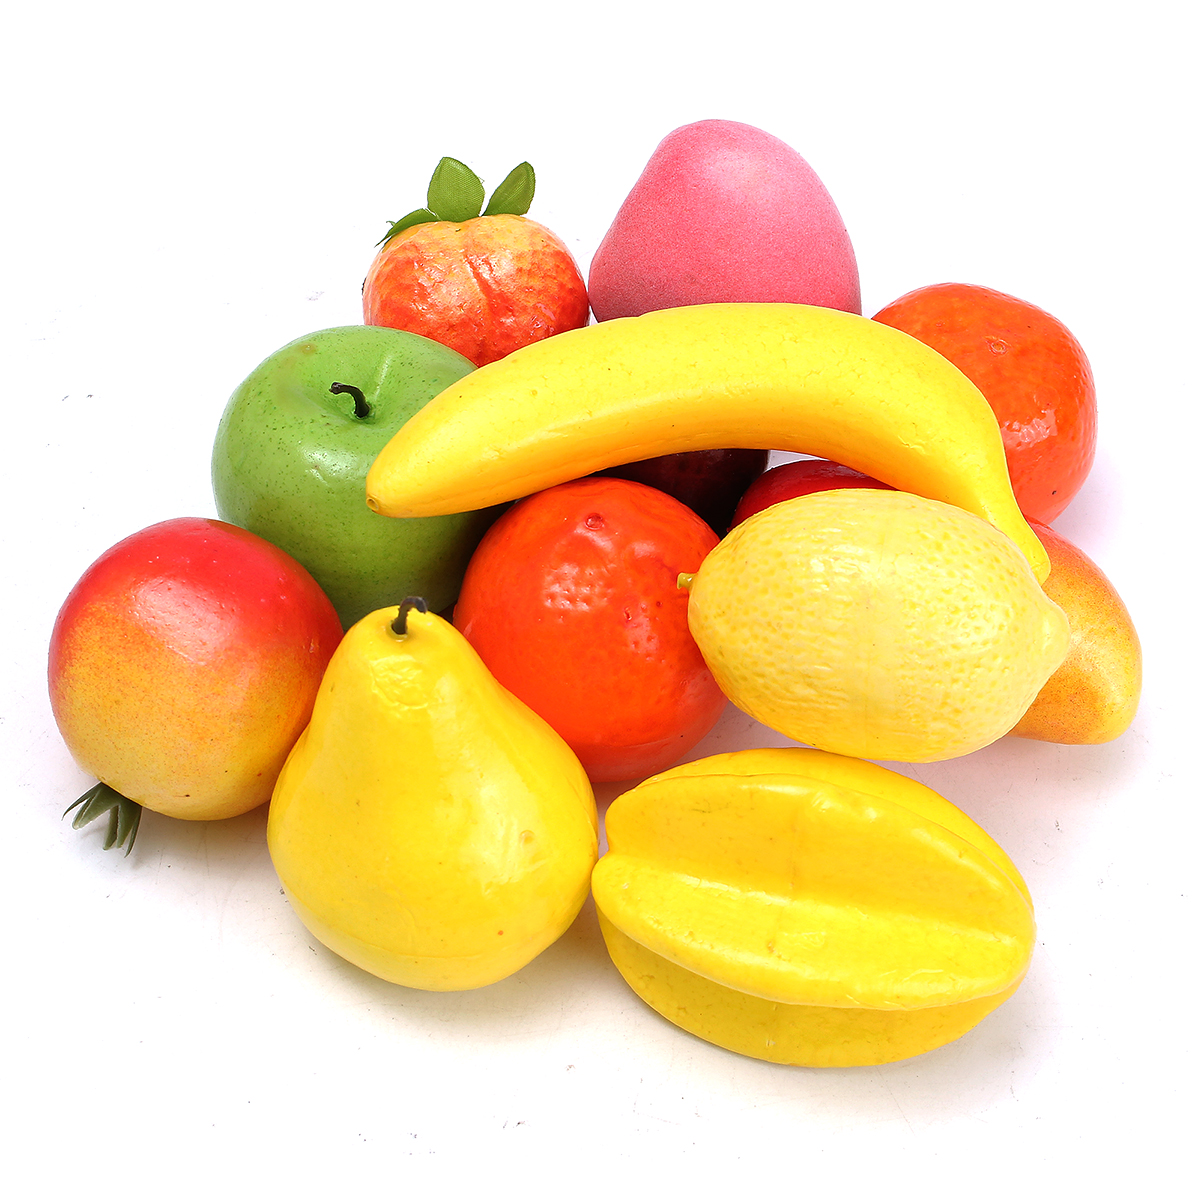 Купить фруктовые недорого. Муляжи овощей и фруктов. Муляжи овощей и фруктов для детского сада. Искусственные фрукты. Муляжи фруктов для детей.